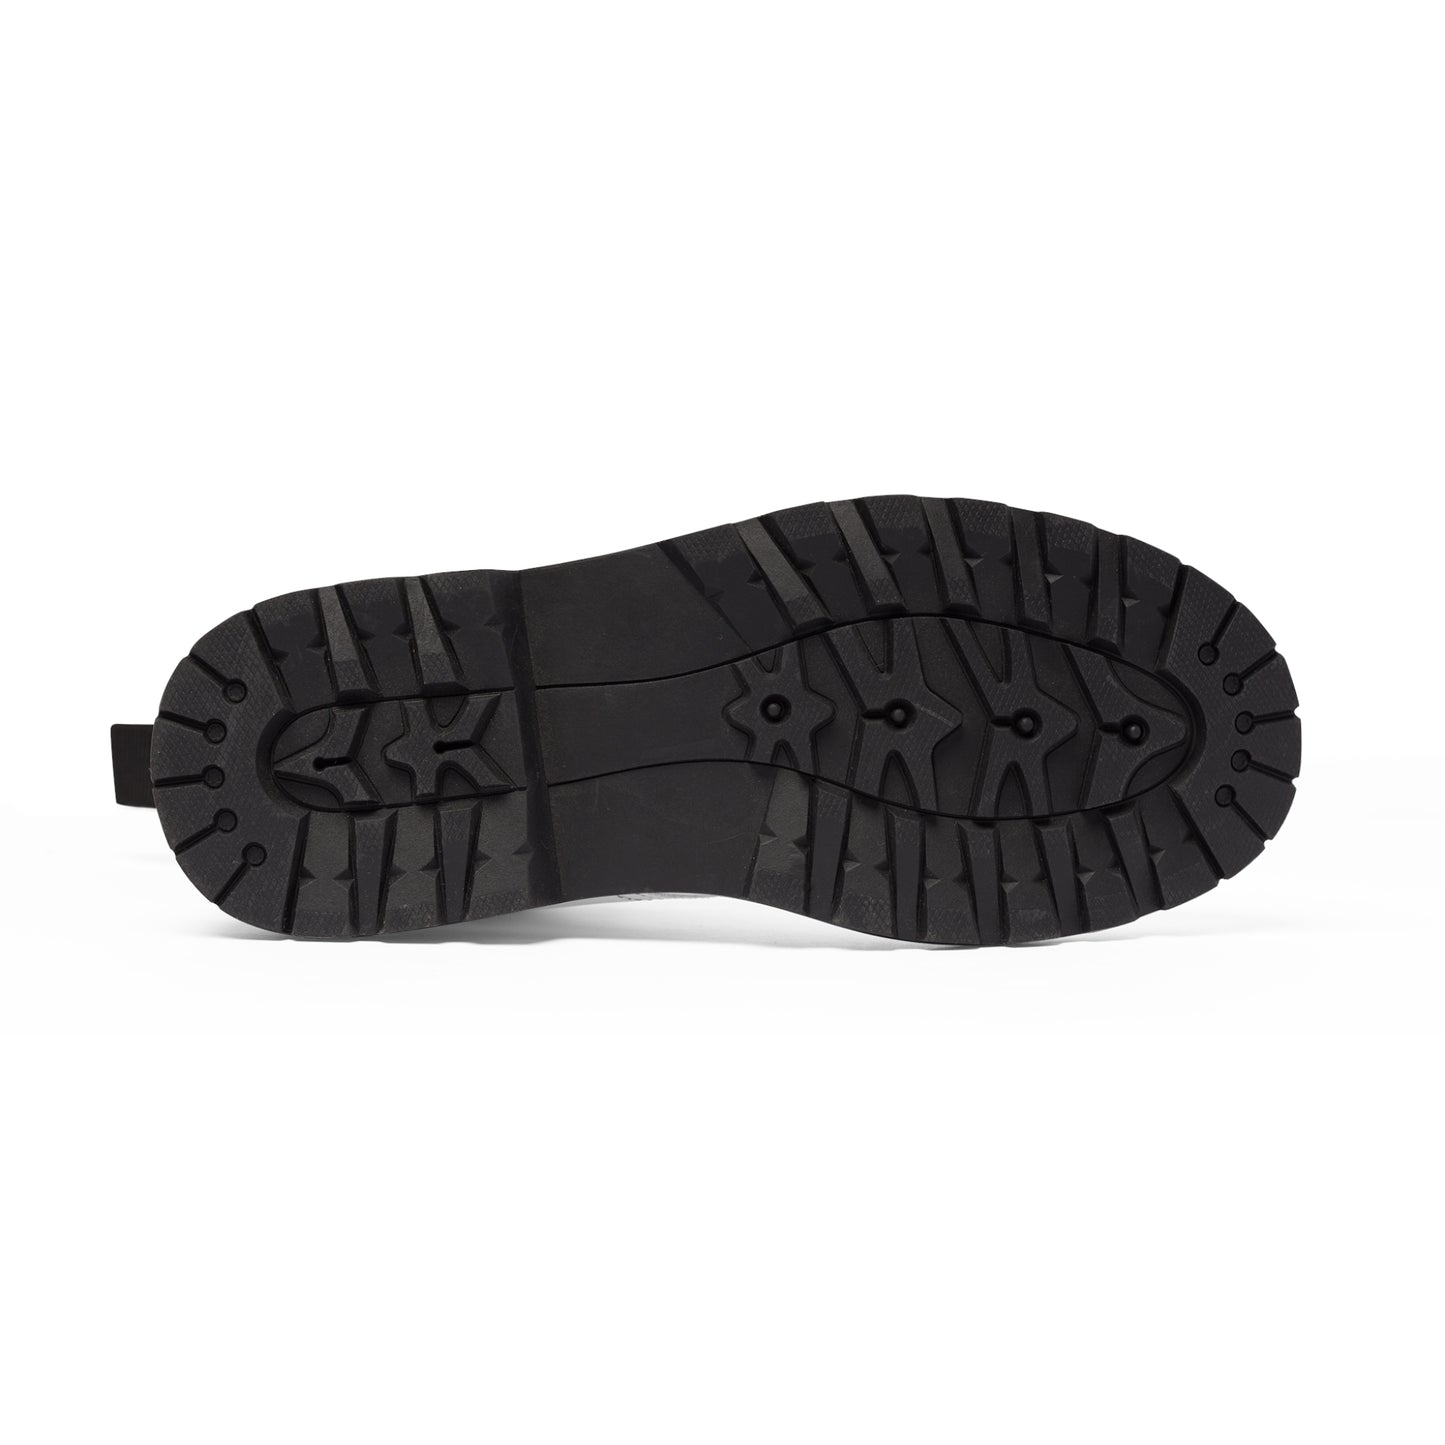 Men's Canvas Boots - 02869 US 10.5 Black sole